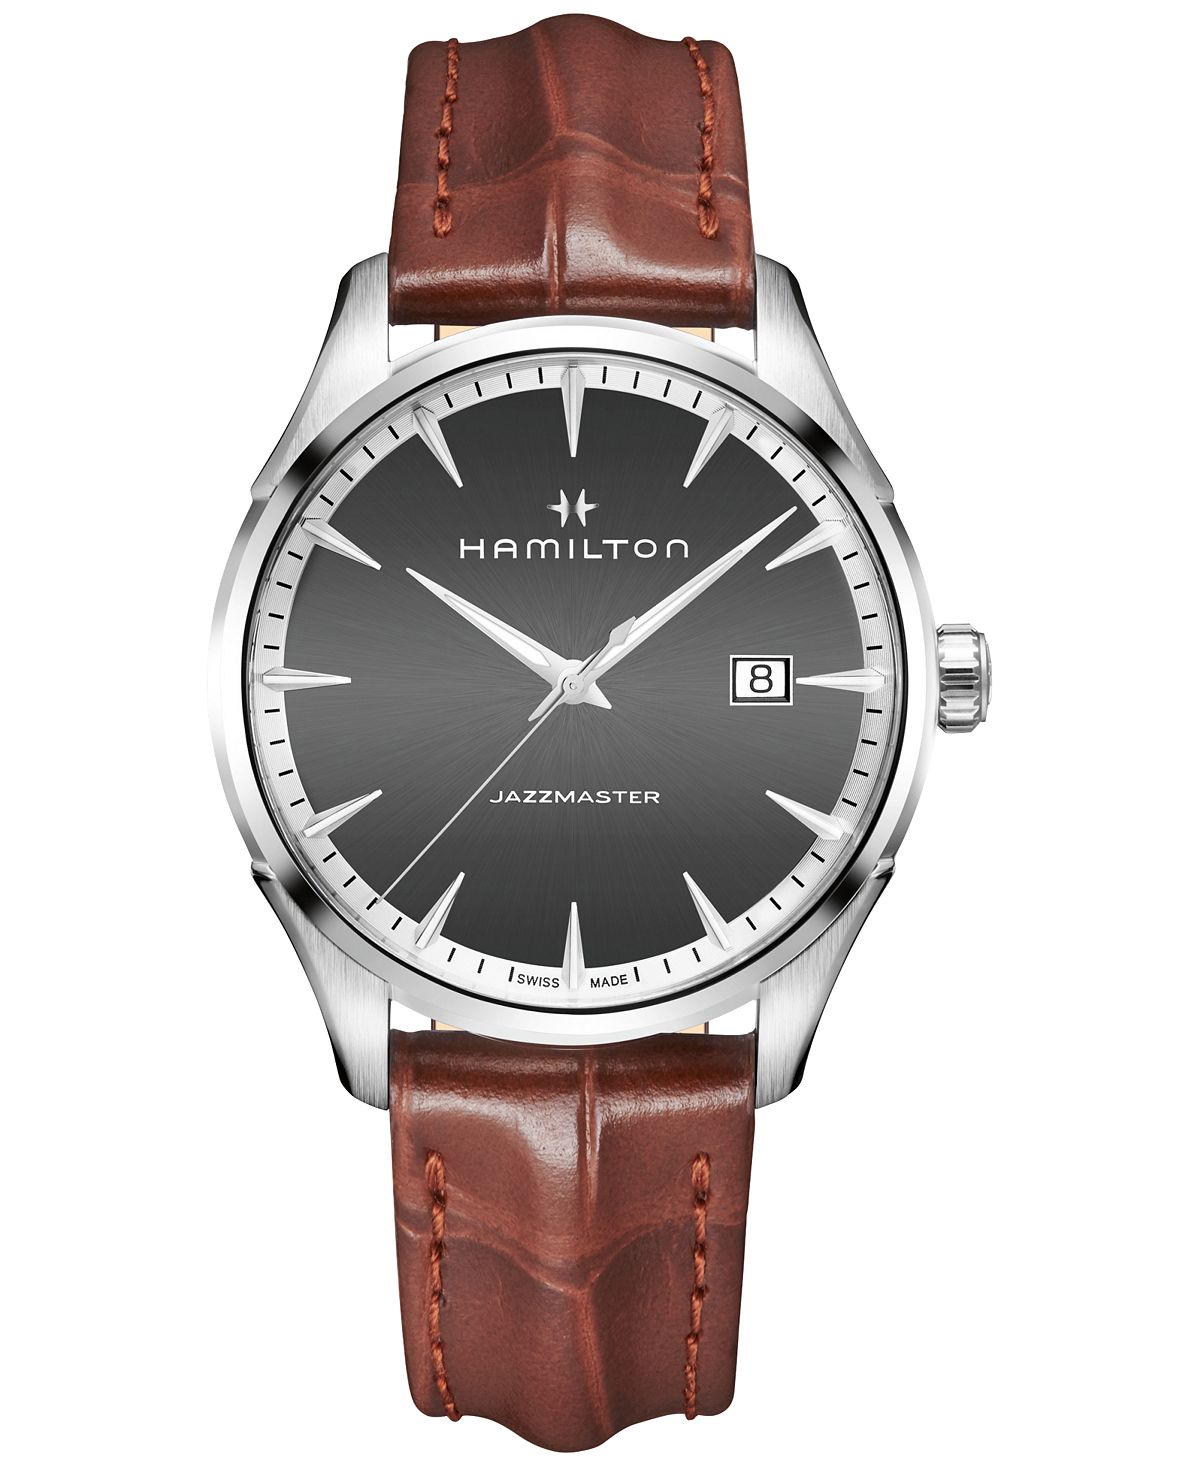 Мужские часы Swiss Jazzmaster светло-коричневого цвета с кожаным ремешком, 40 мм Hamilton наручные часы hamilton jazzmaster chrono quartz